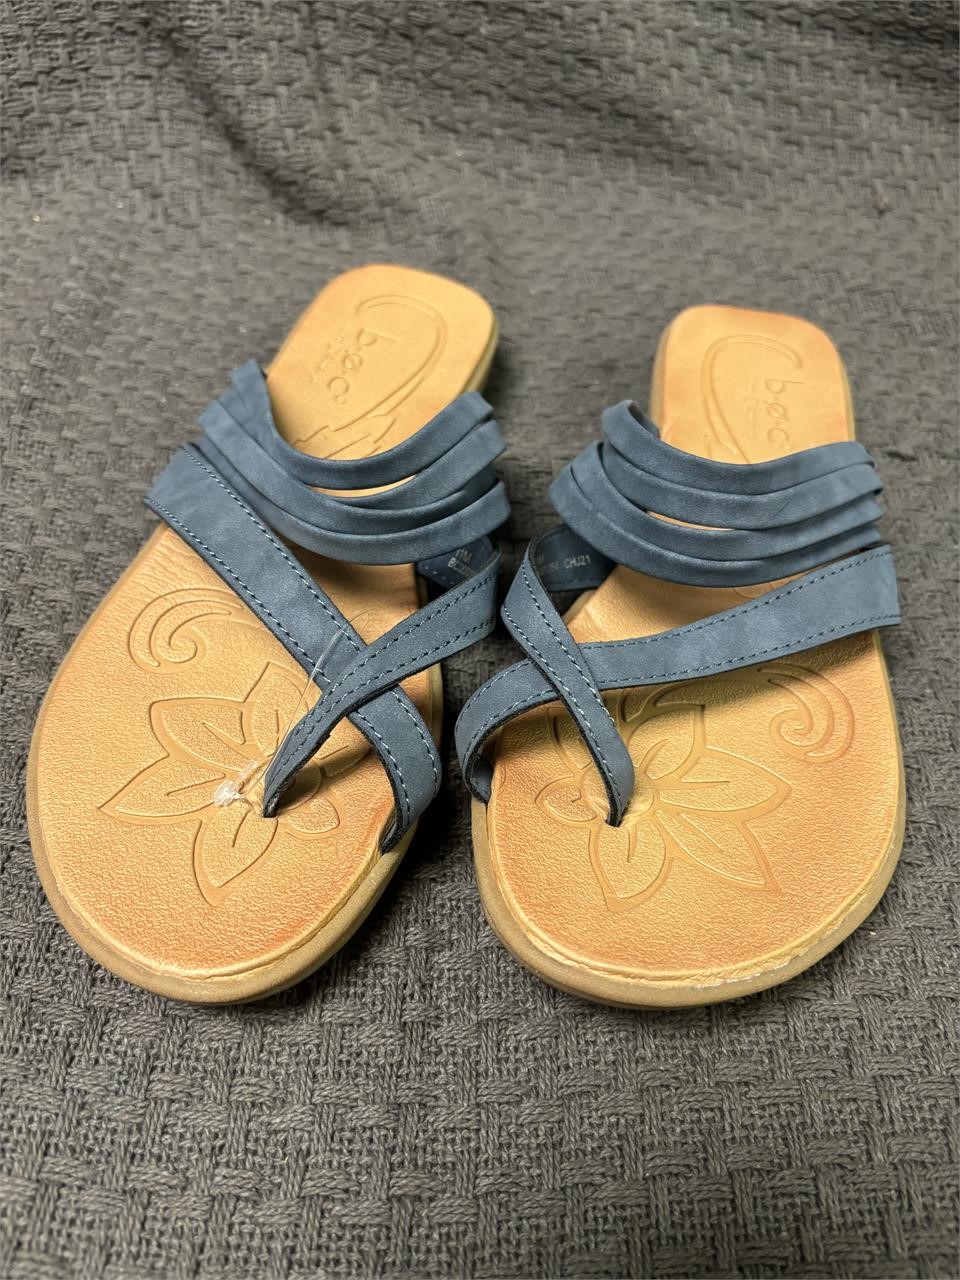 BOC size 11 sandals